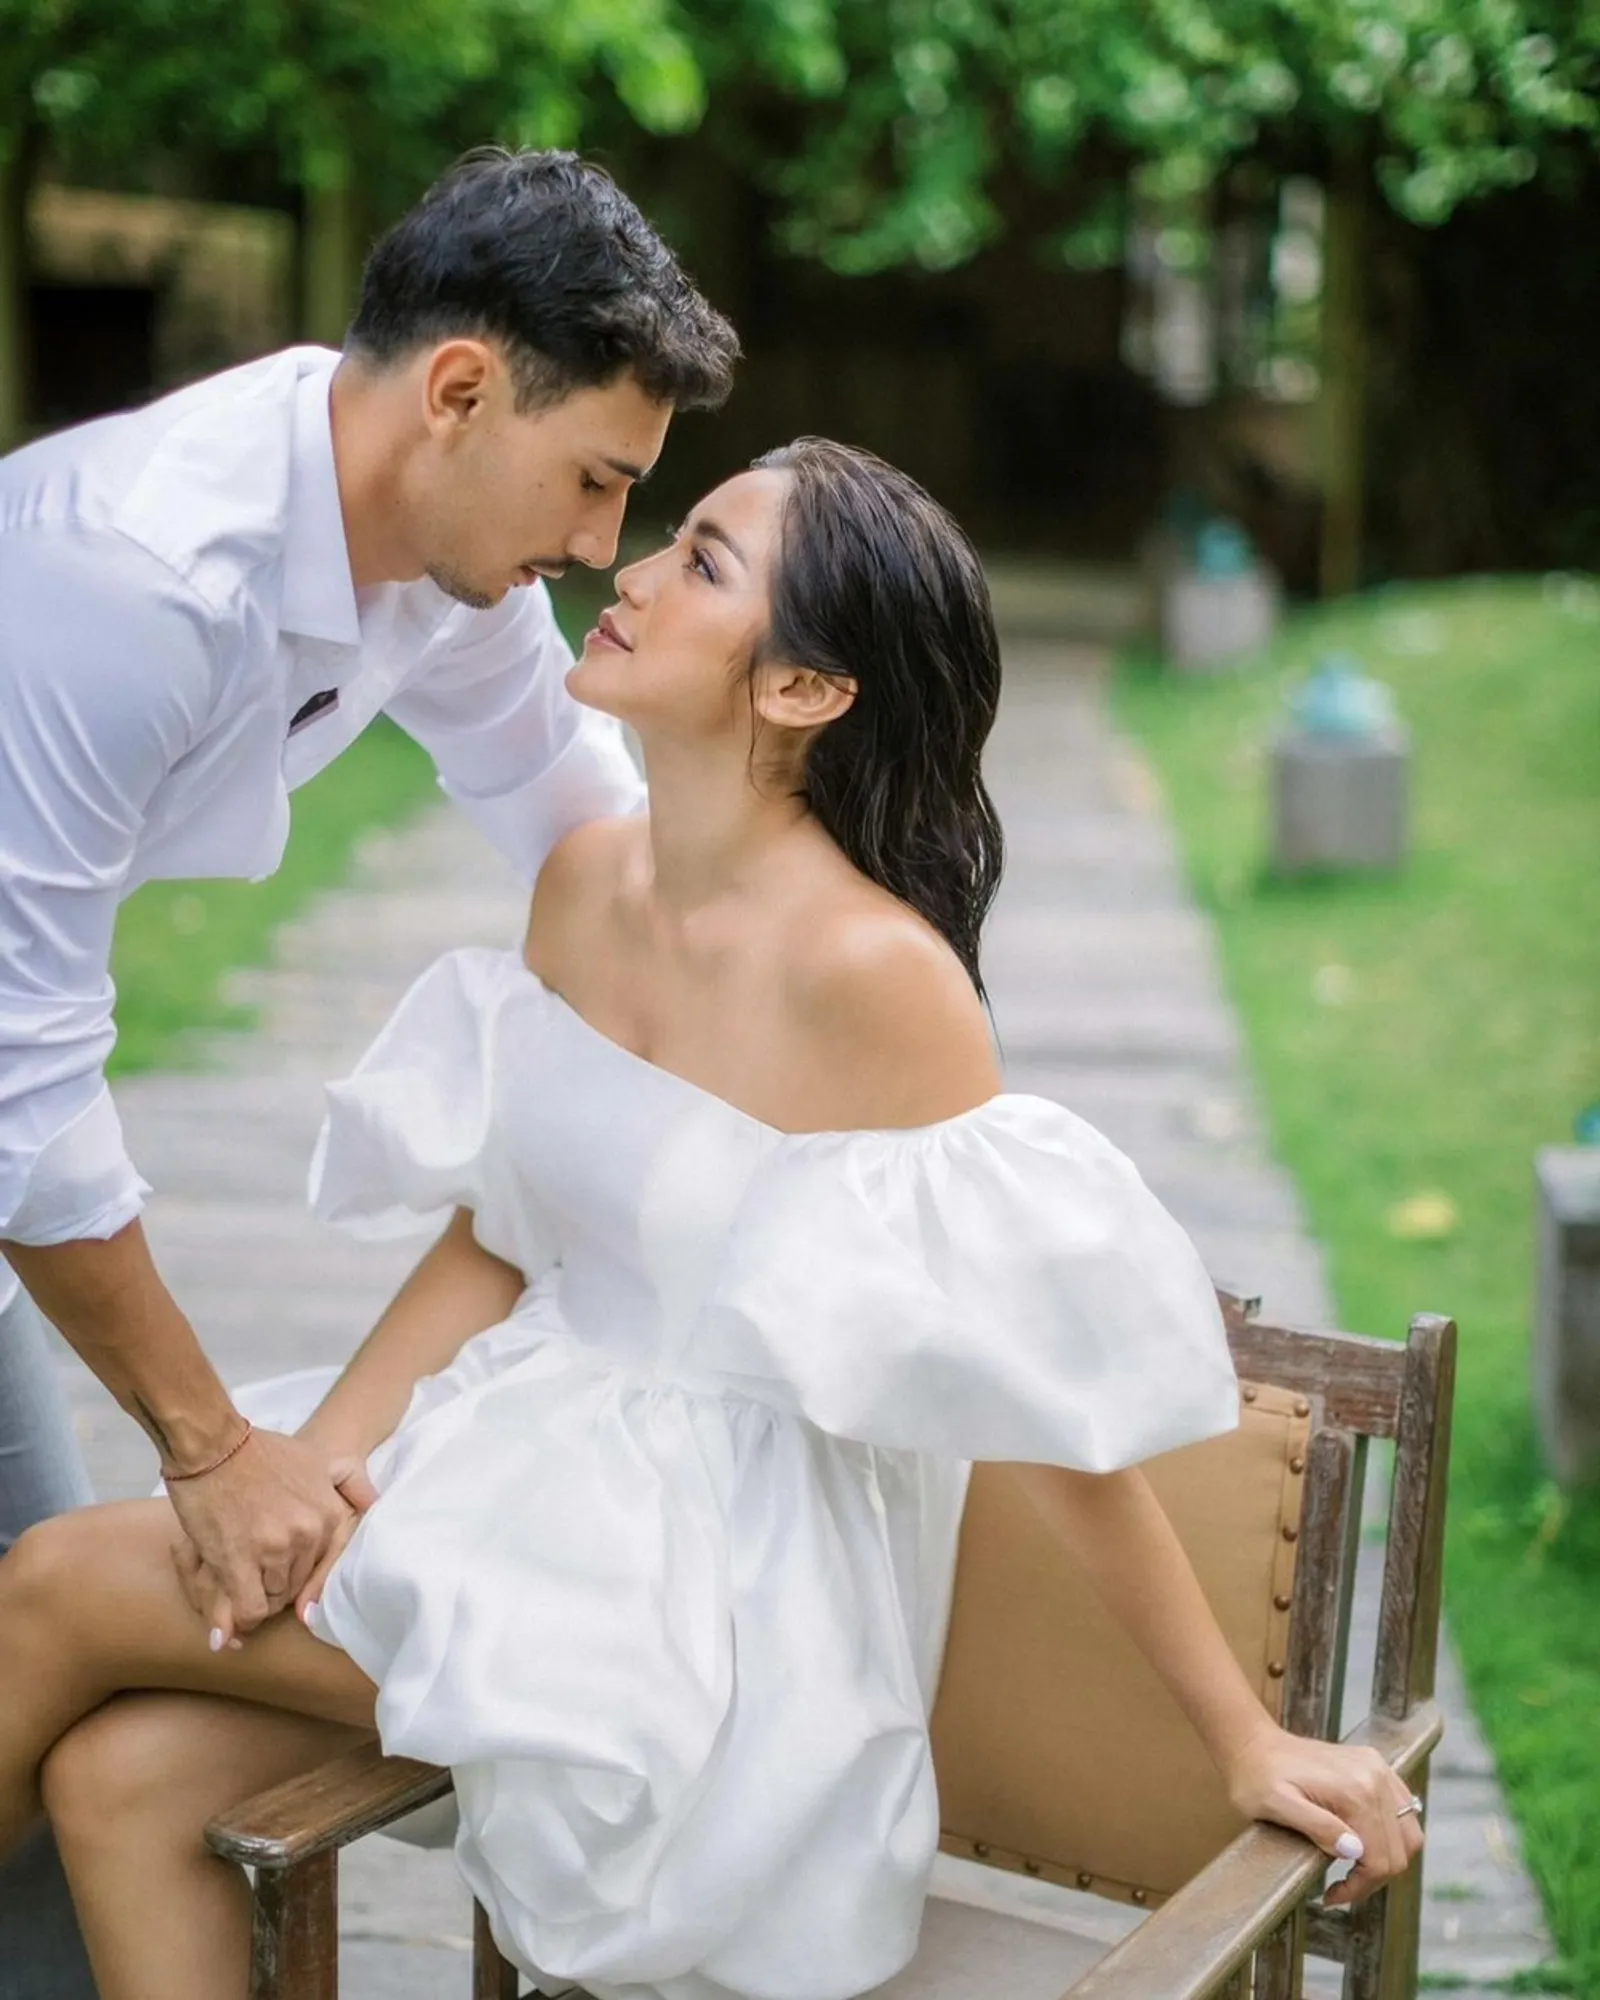 10 Foto Pre-Wedding Jessica Iskandar dan Vincent Verhaag, Intim Banget